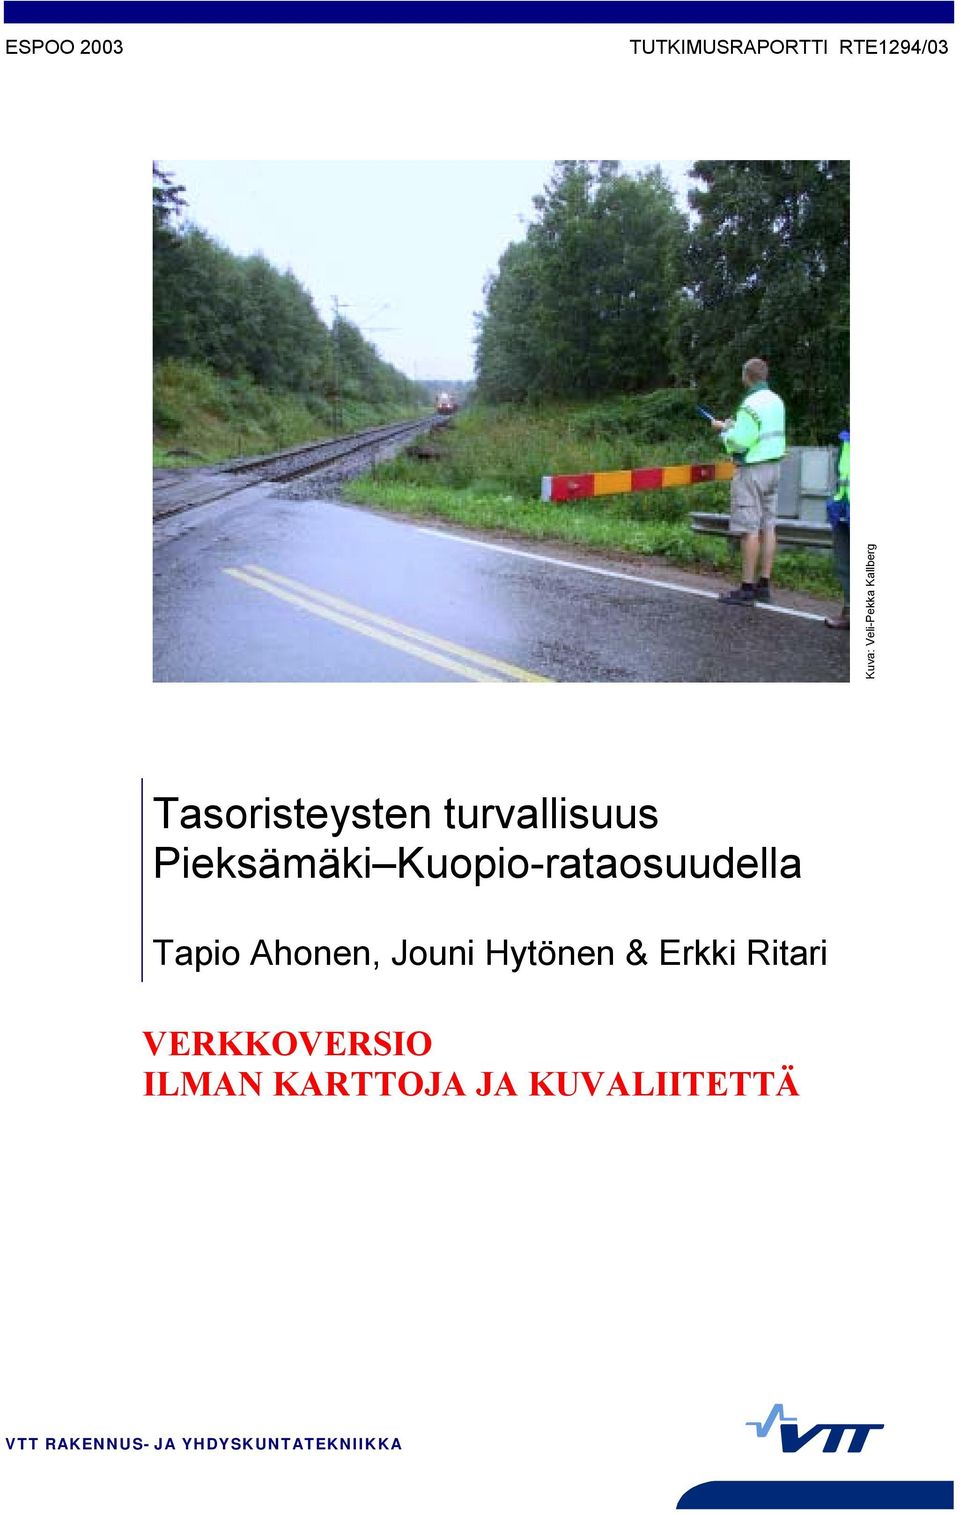 Kuopio-rataosuudella Tapio Ahonen, Jouni Hytönen & Erkki